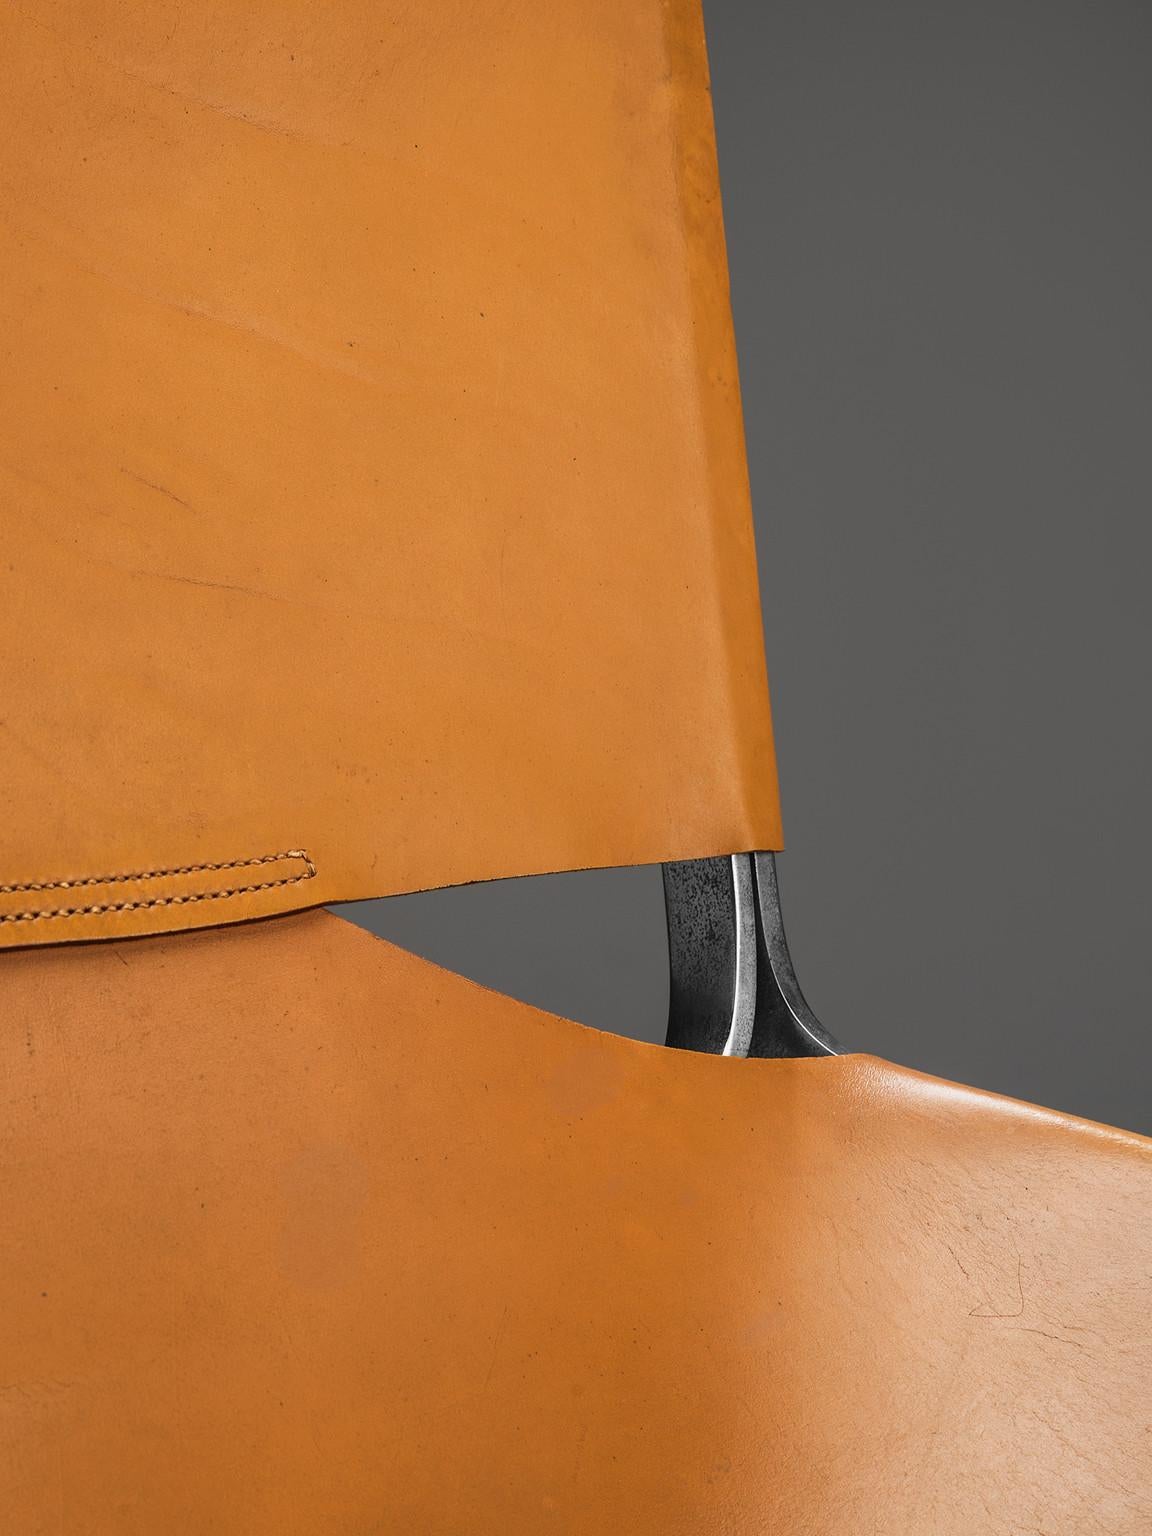 Pierre Paulin für Artifort 'F-444' Easy Chair aus cognacfarbenem Leder  im Angebot 1